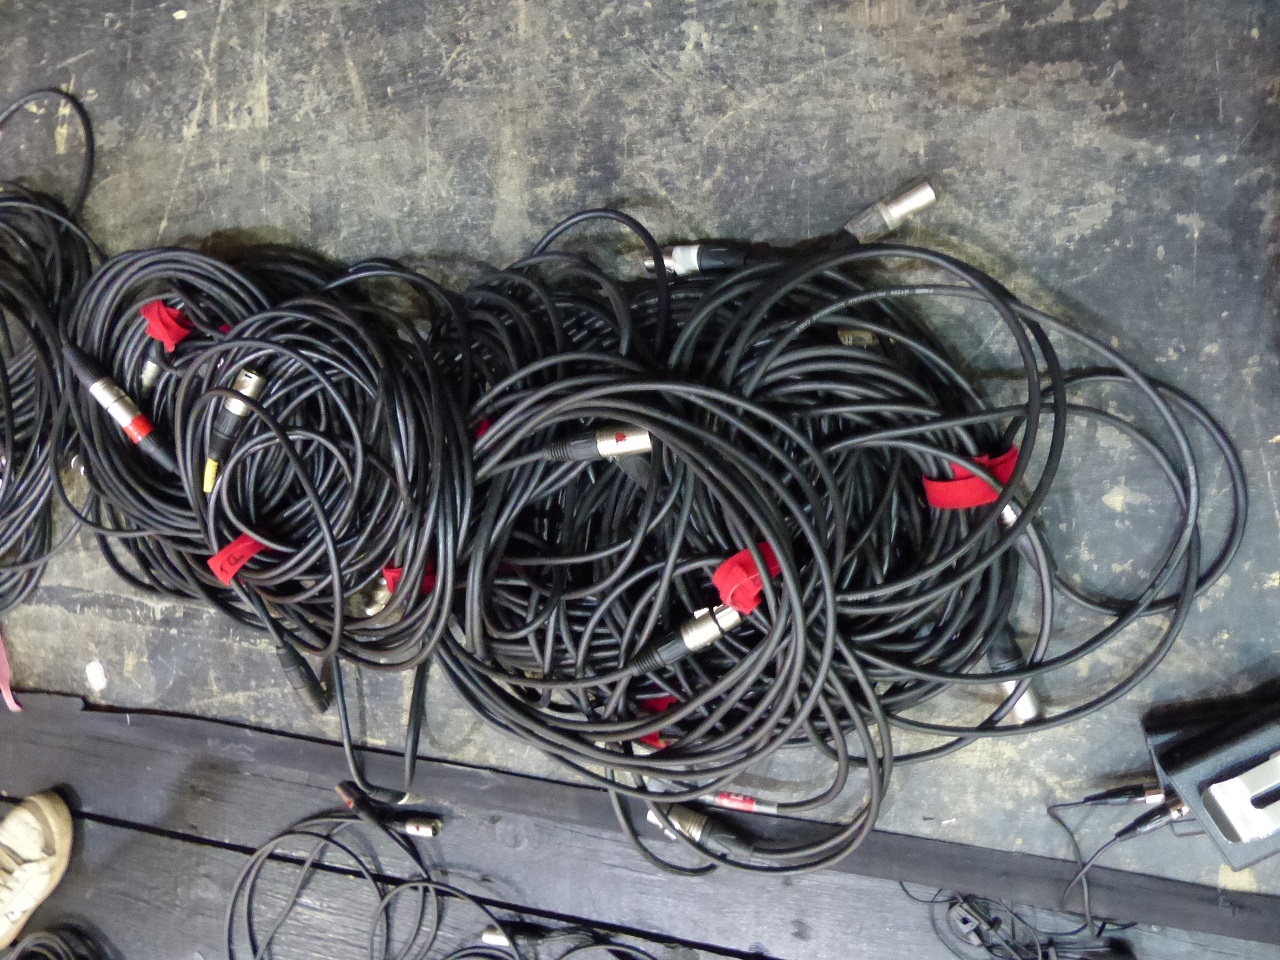 Les cables...